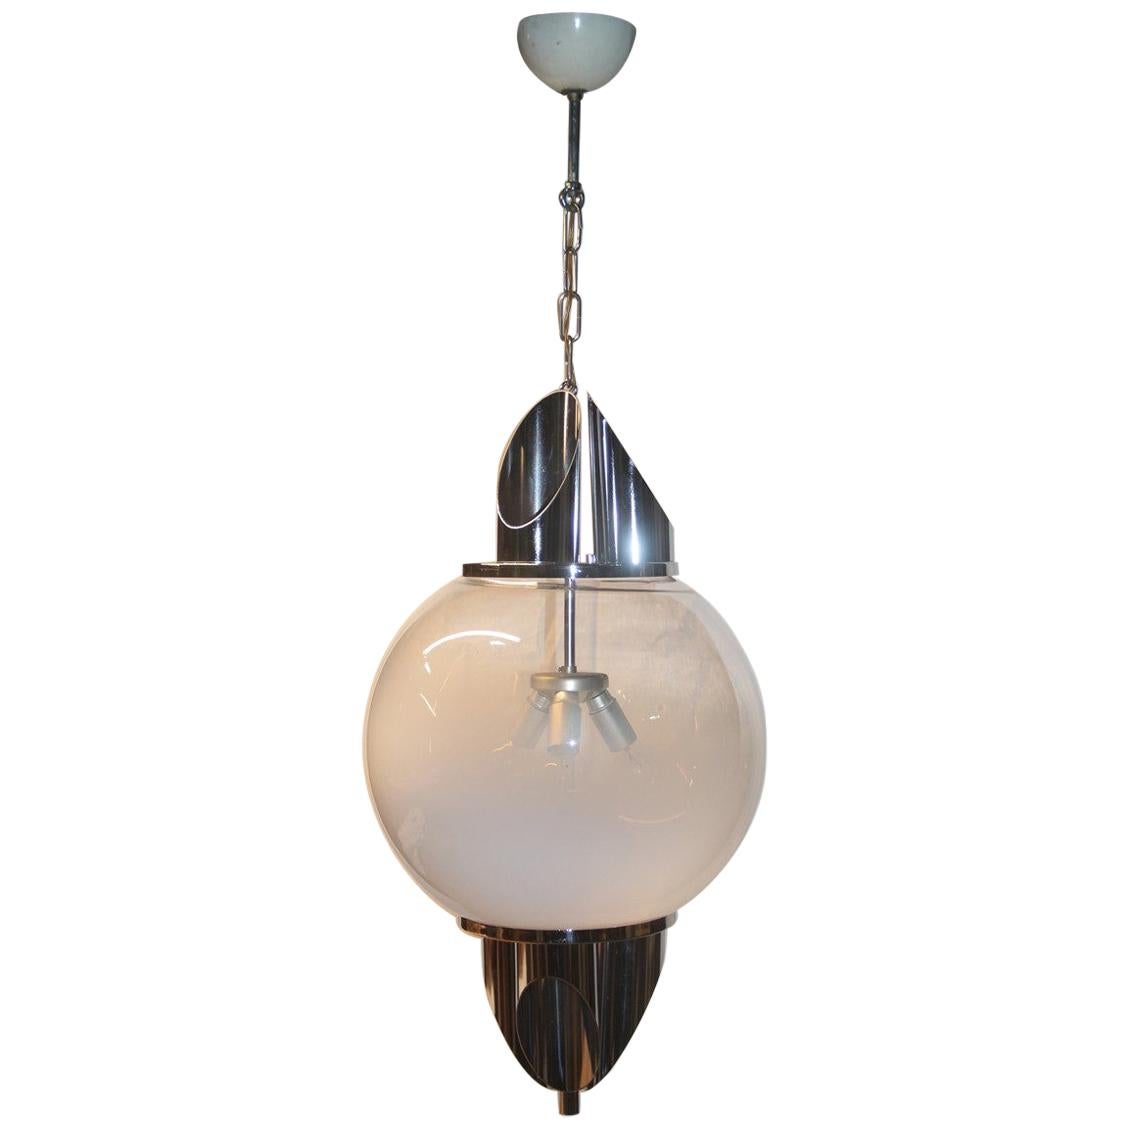 Ceiling Lamp Ball Murano Glass Selenova Italian Design Chrome Silver White